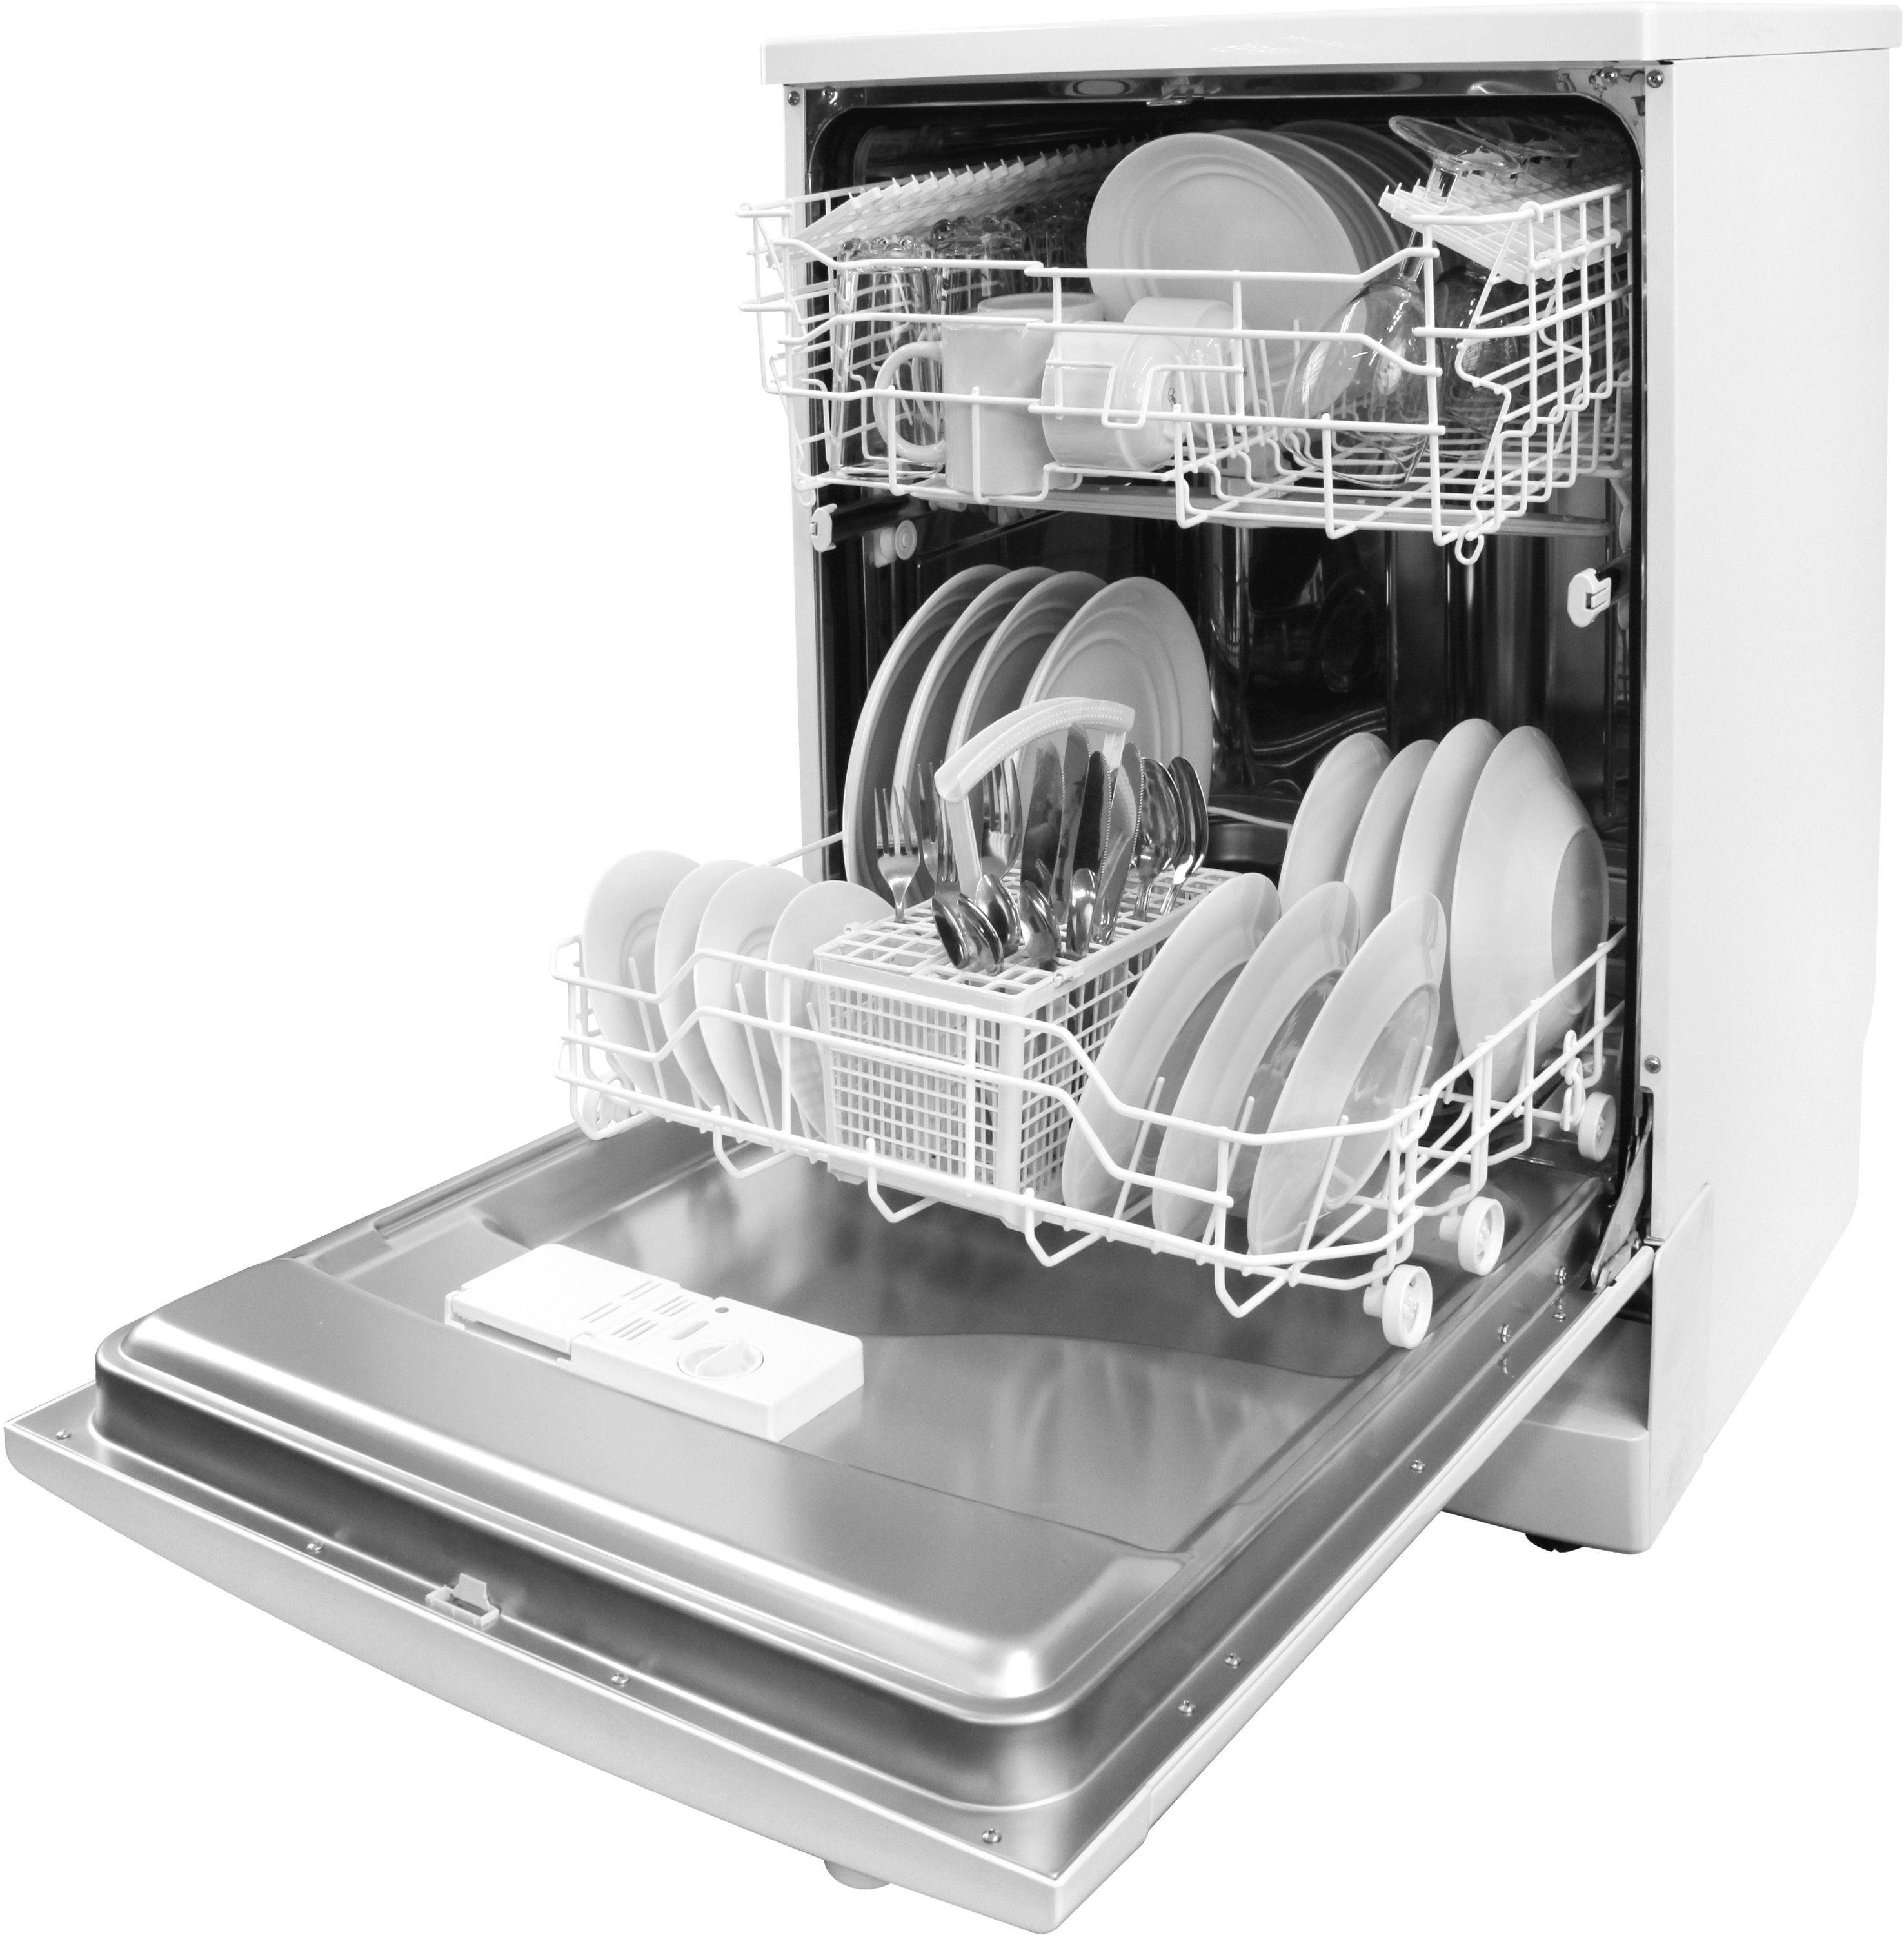 Посудомоечной машинки электролюкс. Посудомоечная машина Electrolux ESF 43020. Посудомоечная машина Whirlpool ikea 2006. Electrolux ESF 8000w. Посудомоечной машины Electrolux rd110.